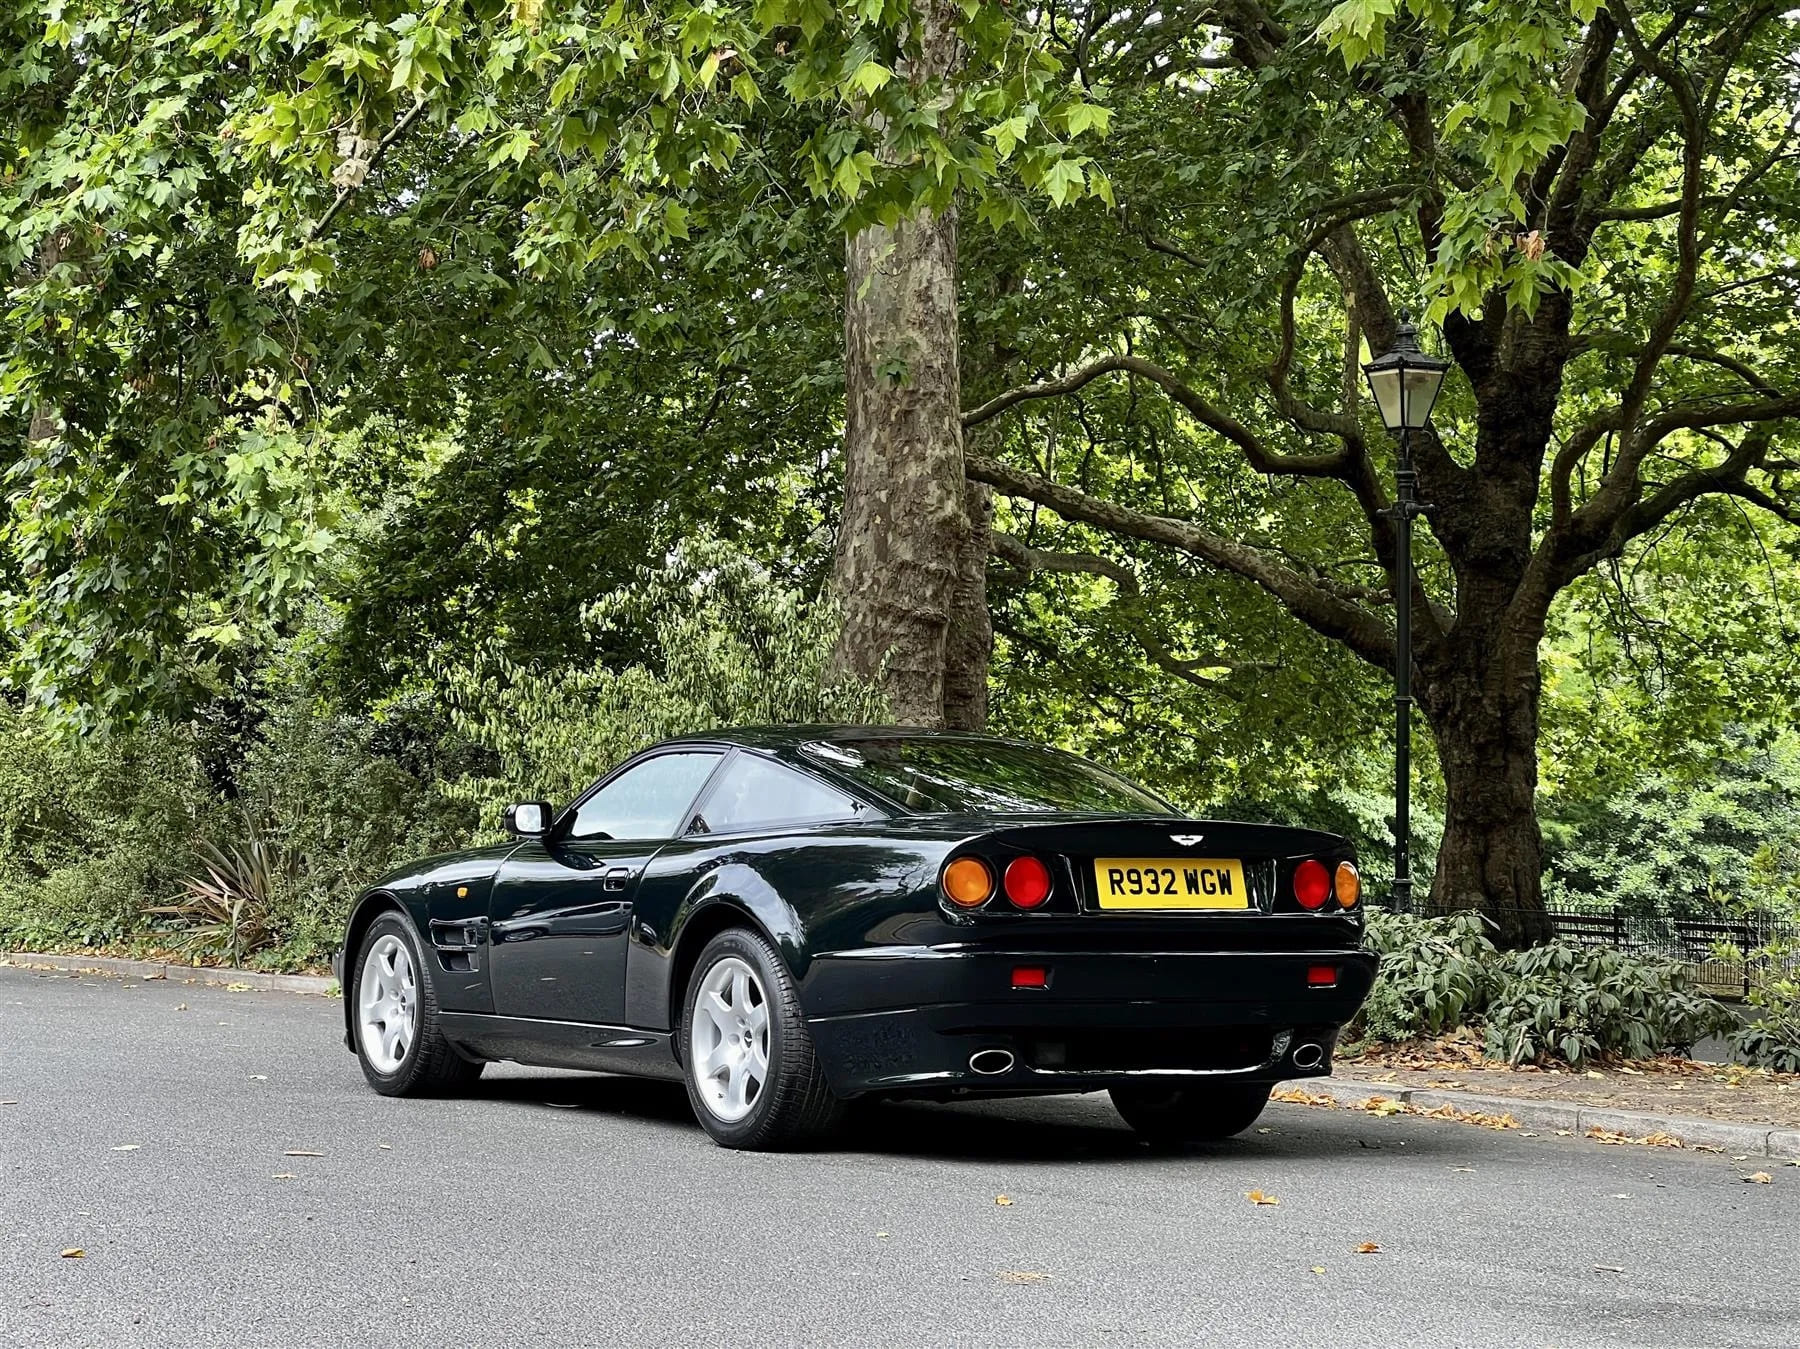 На продажу выставили редкий Aston Martin королевской семьи (фото) фото 3